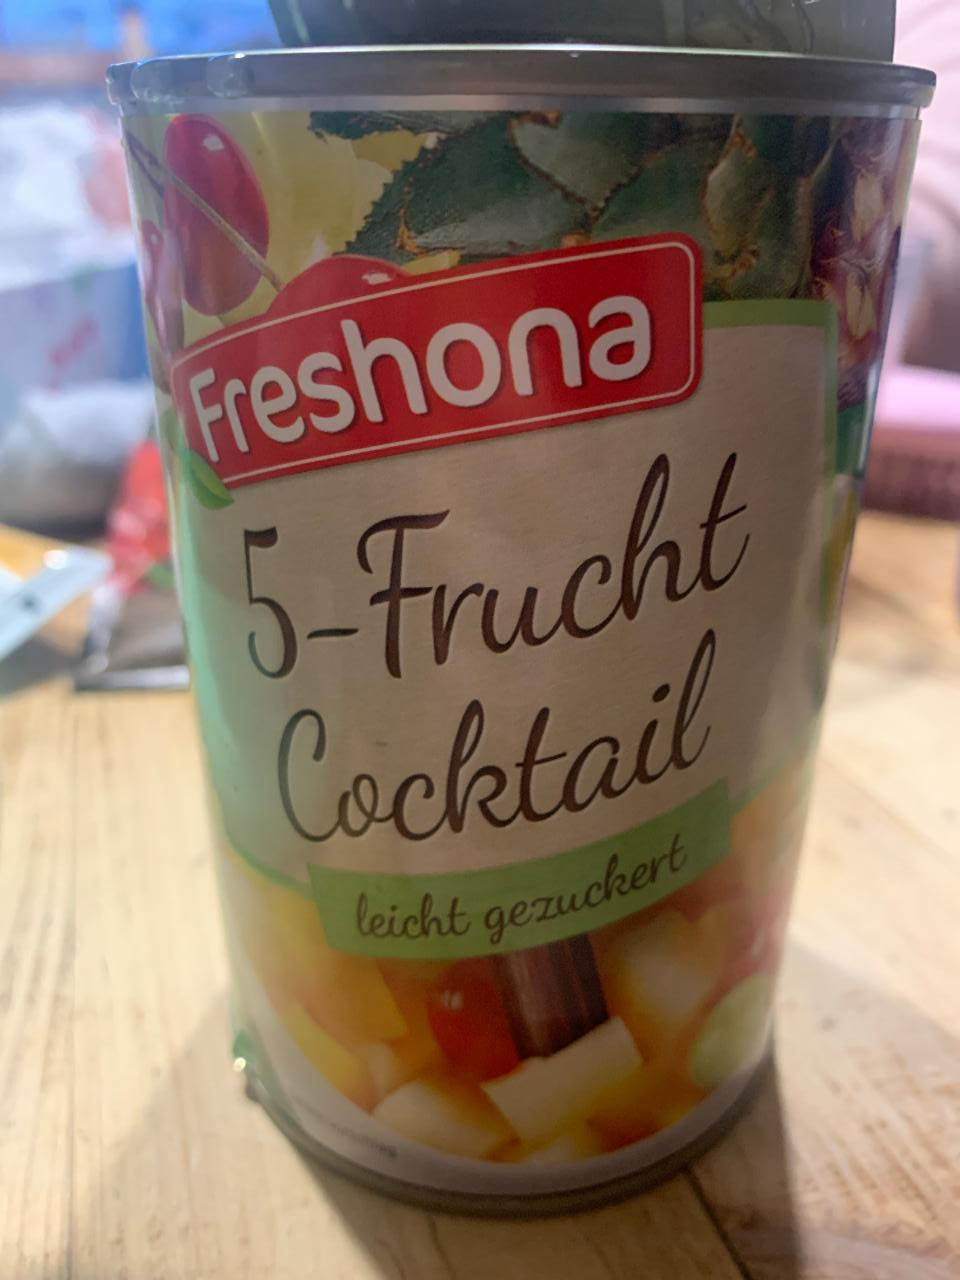 Fotografie - 5 frucht coctail leicht gezuckert Freshona